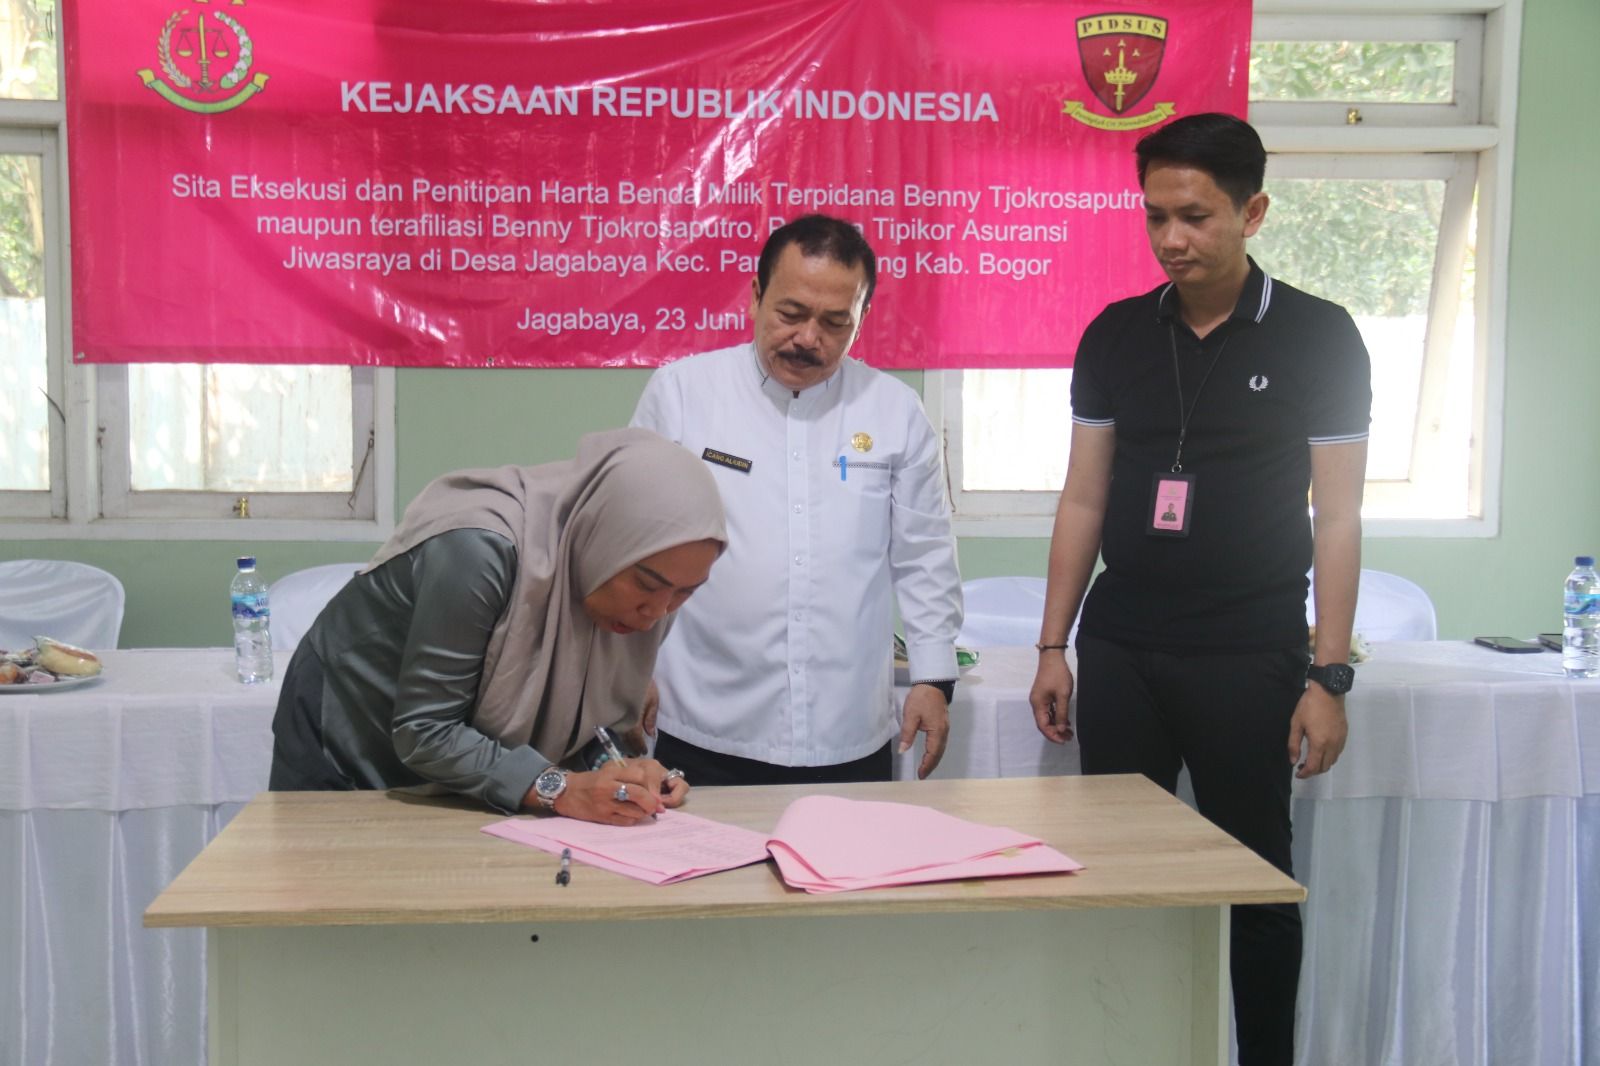 Penandatanganan penitipan aset yang disita dari Benny Tjokrosaputro atas kasus korupsi Jiwasraya. Penandatangan dilaksanakan di pada hari Jumat, 23 Juni 2023, di kantor Desa Jagabaya, Kecamatan Parung Panjang, Kabupaten Bogor. 
